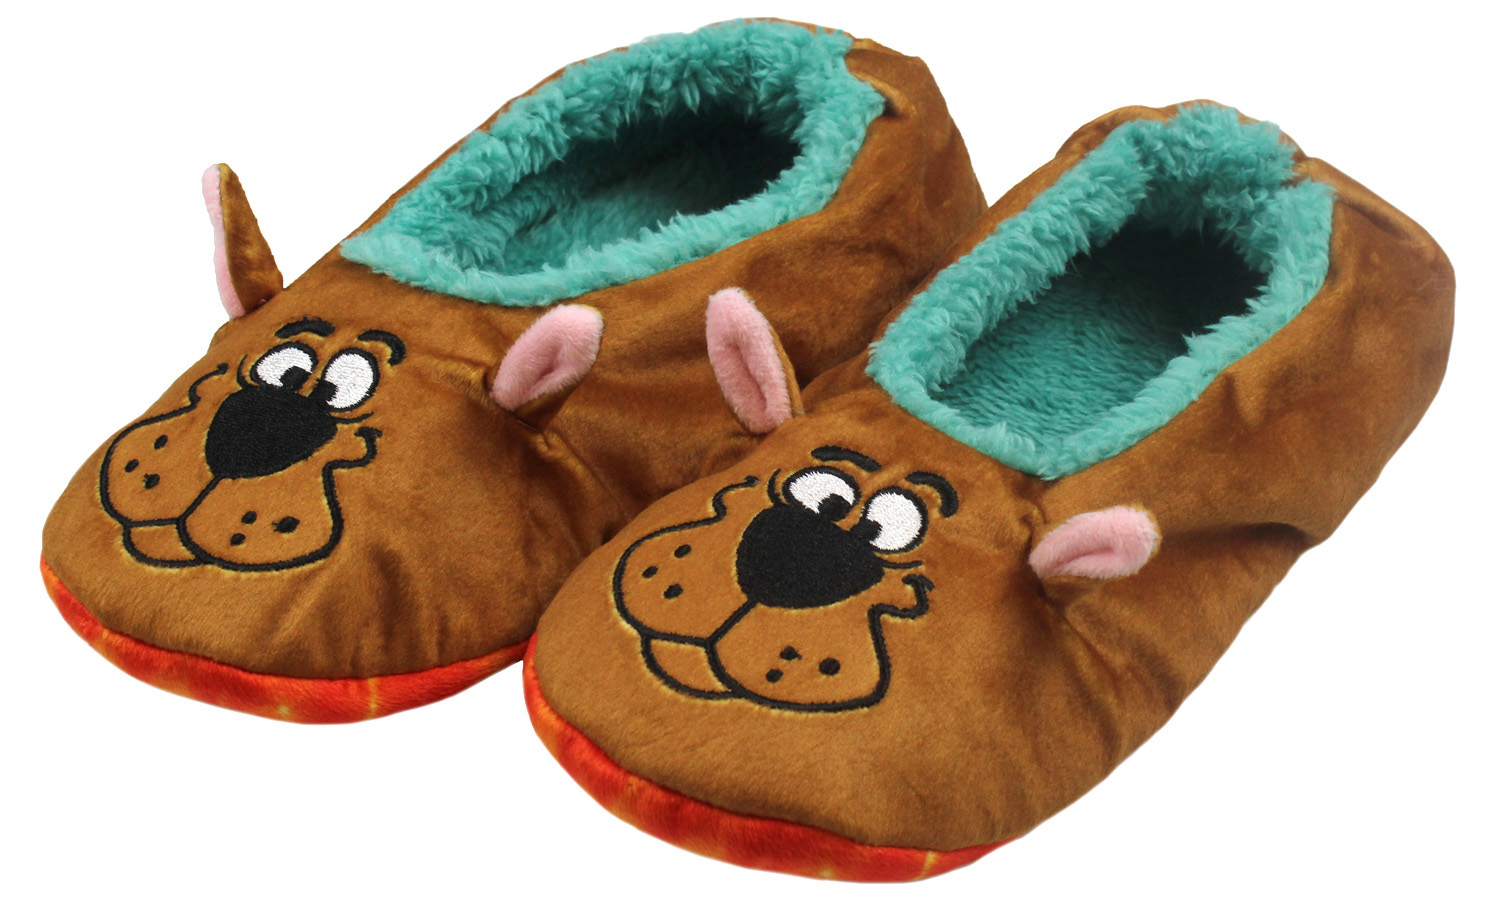 Scooby-Doo Scooby Doo Slippers With Tie Dye Mystery Machine No-Slip Sole Slipper Socks For Women Men